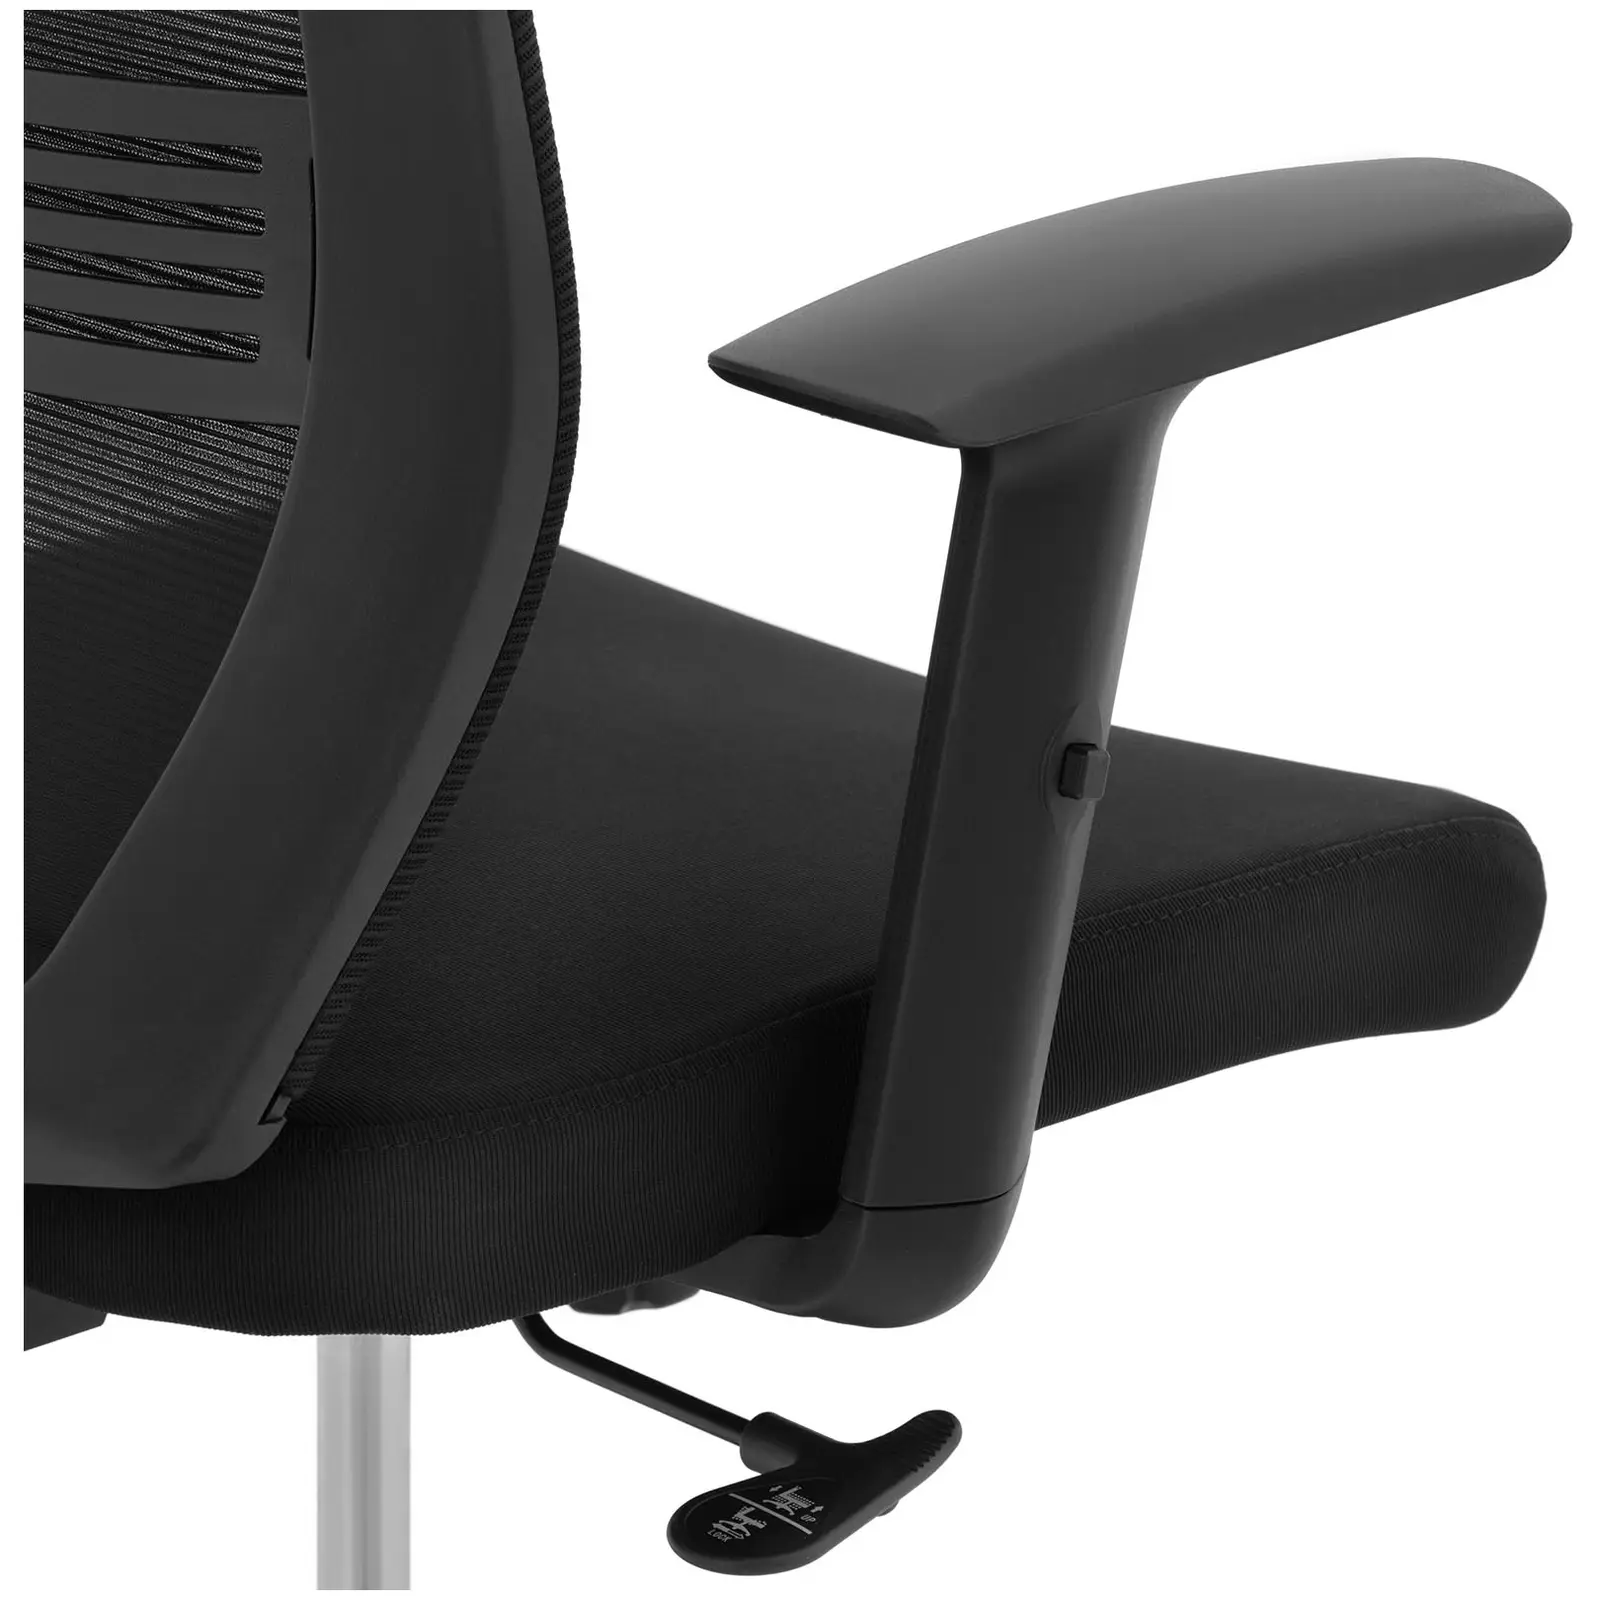 Fotel biurowy - oparcie z siatki - zagłówek - siedzisko 50 x 61 cm - do 150 kg - czarny